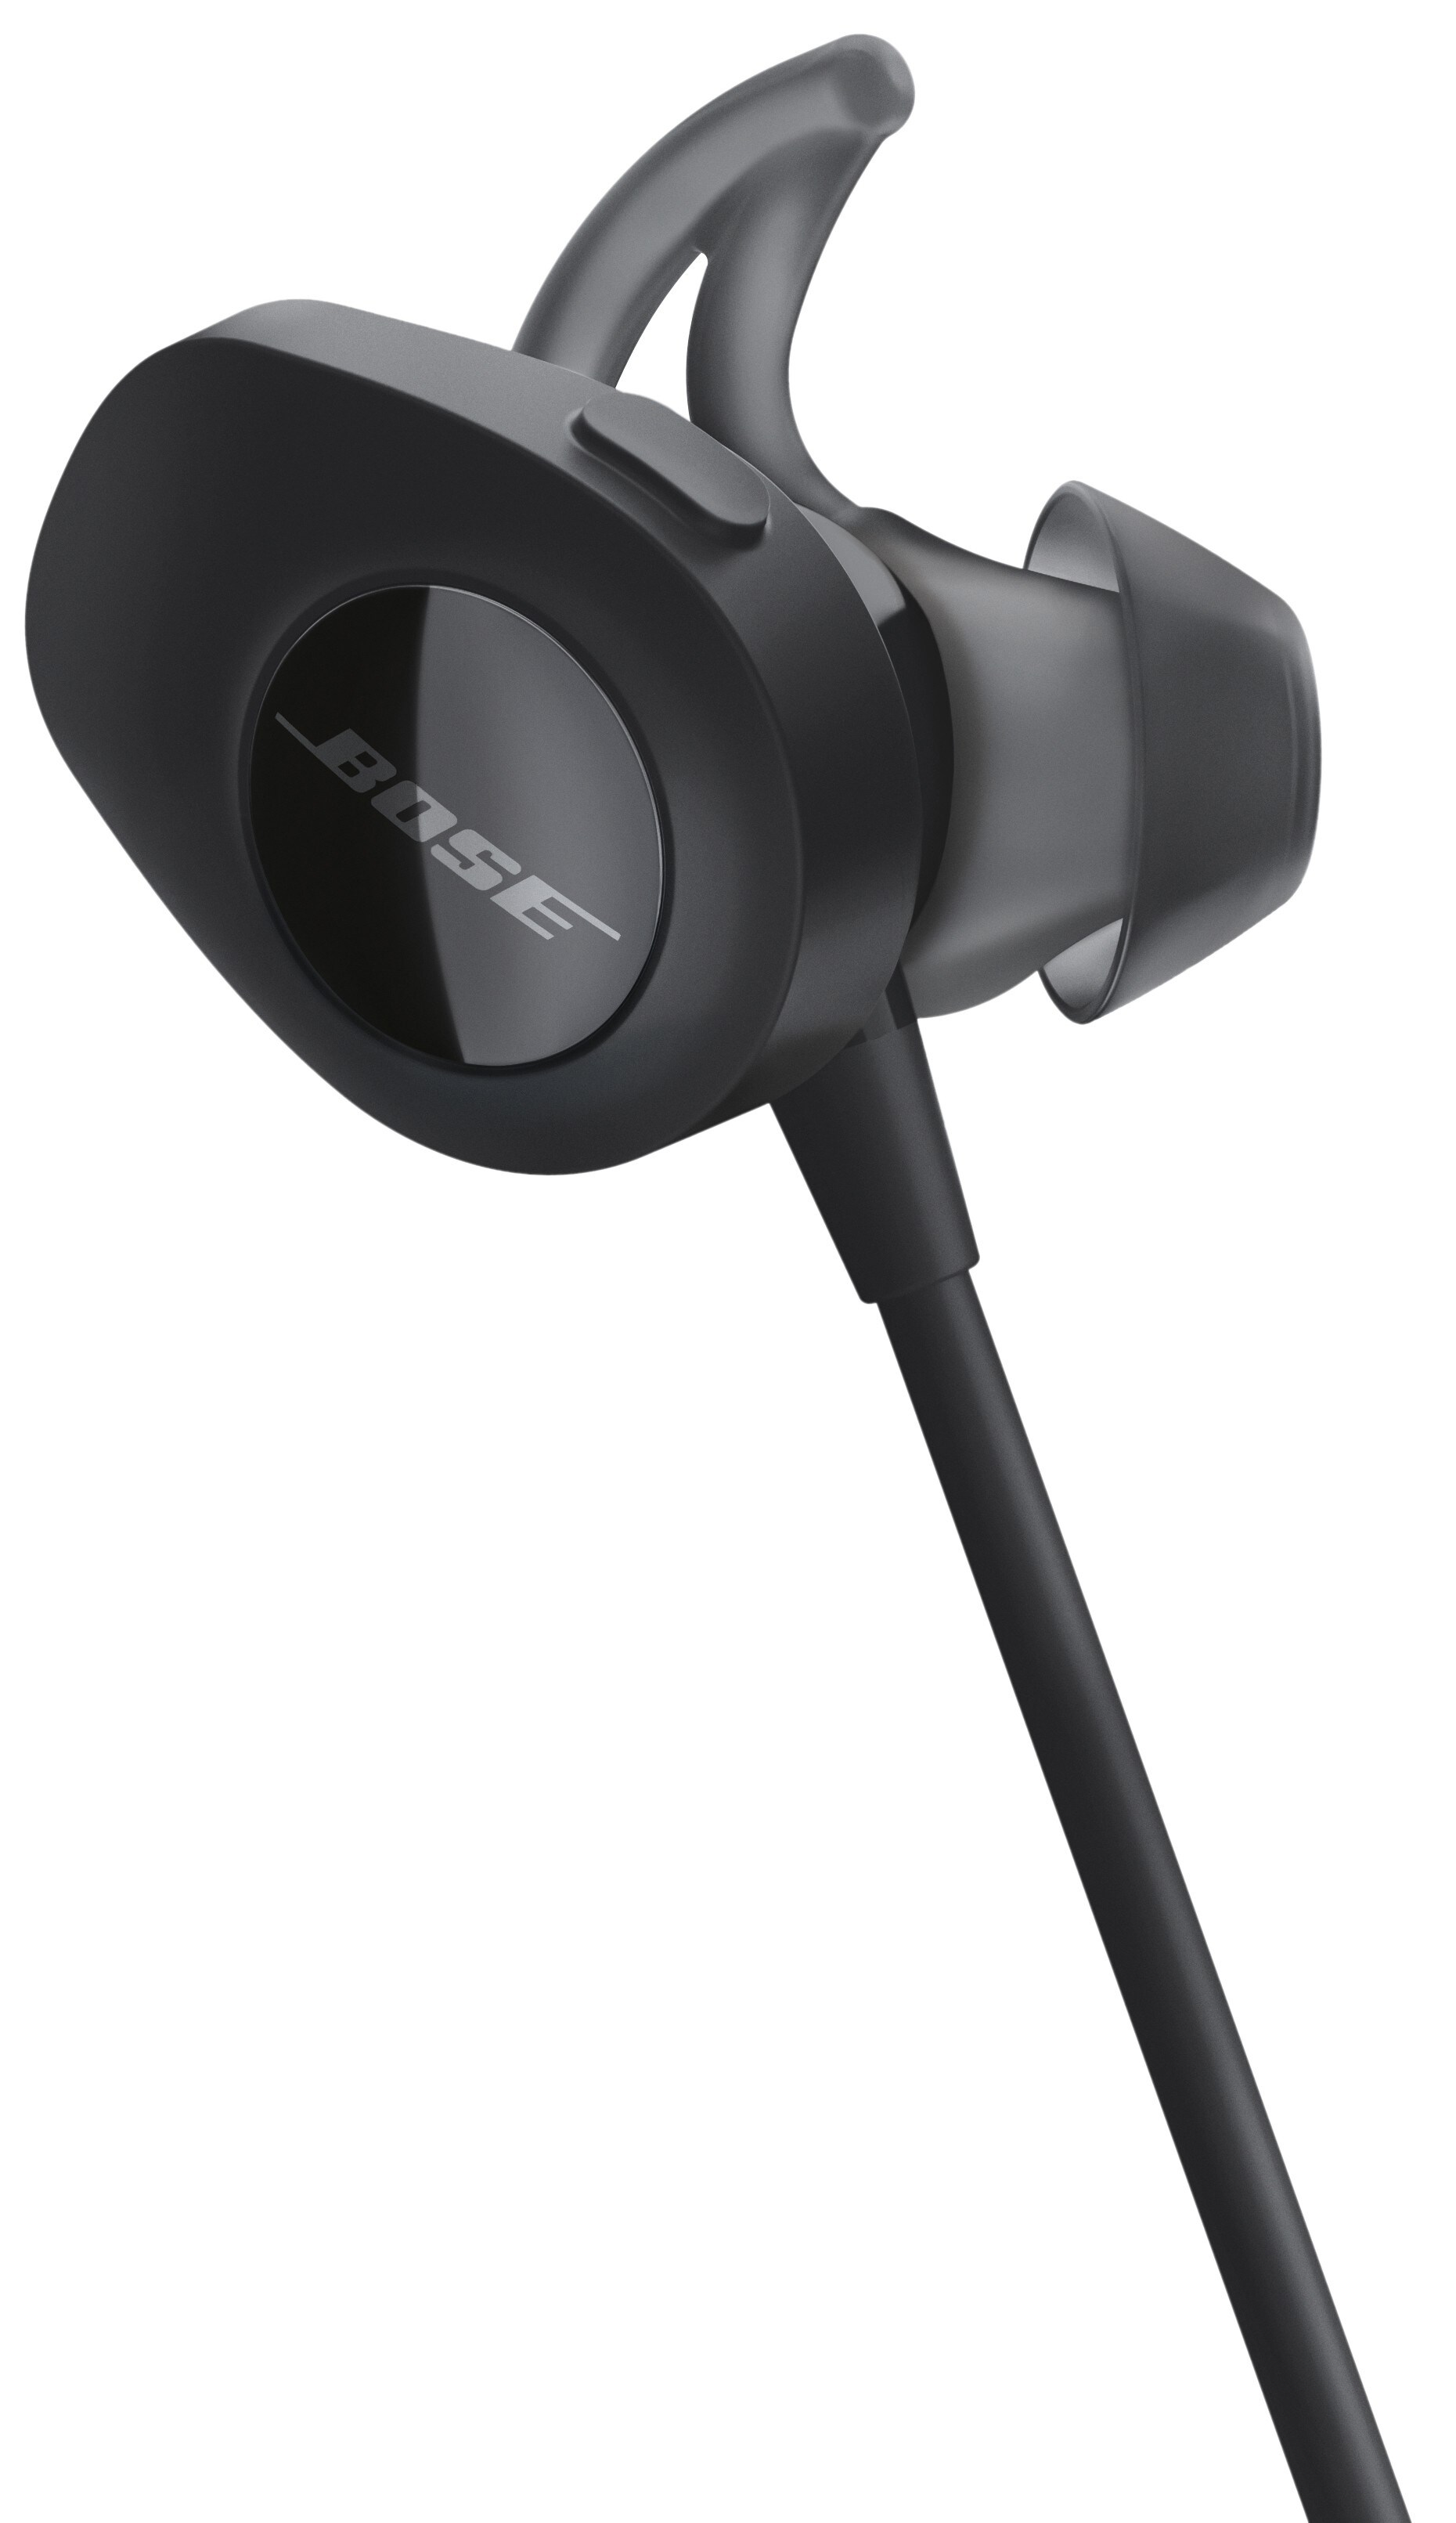 Bose SoundSport trådløse hodetelefoner (sort) - Hodetelefoner - Elkjøp